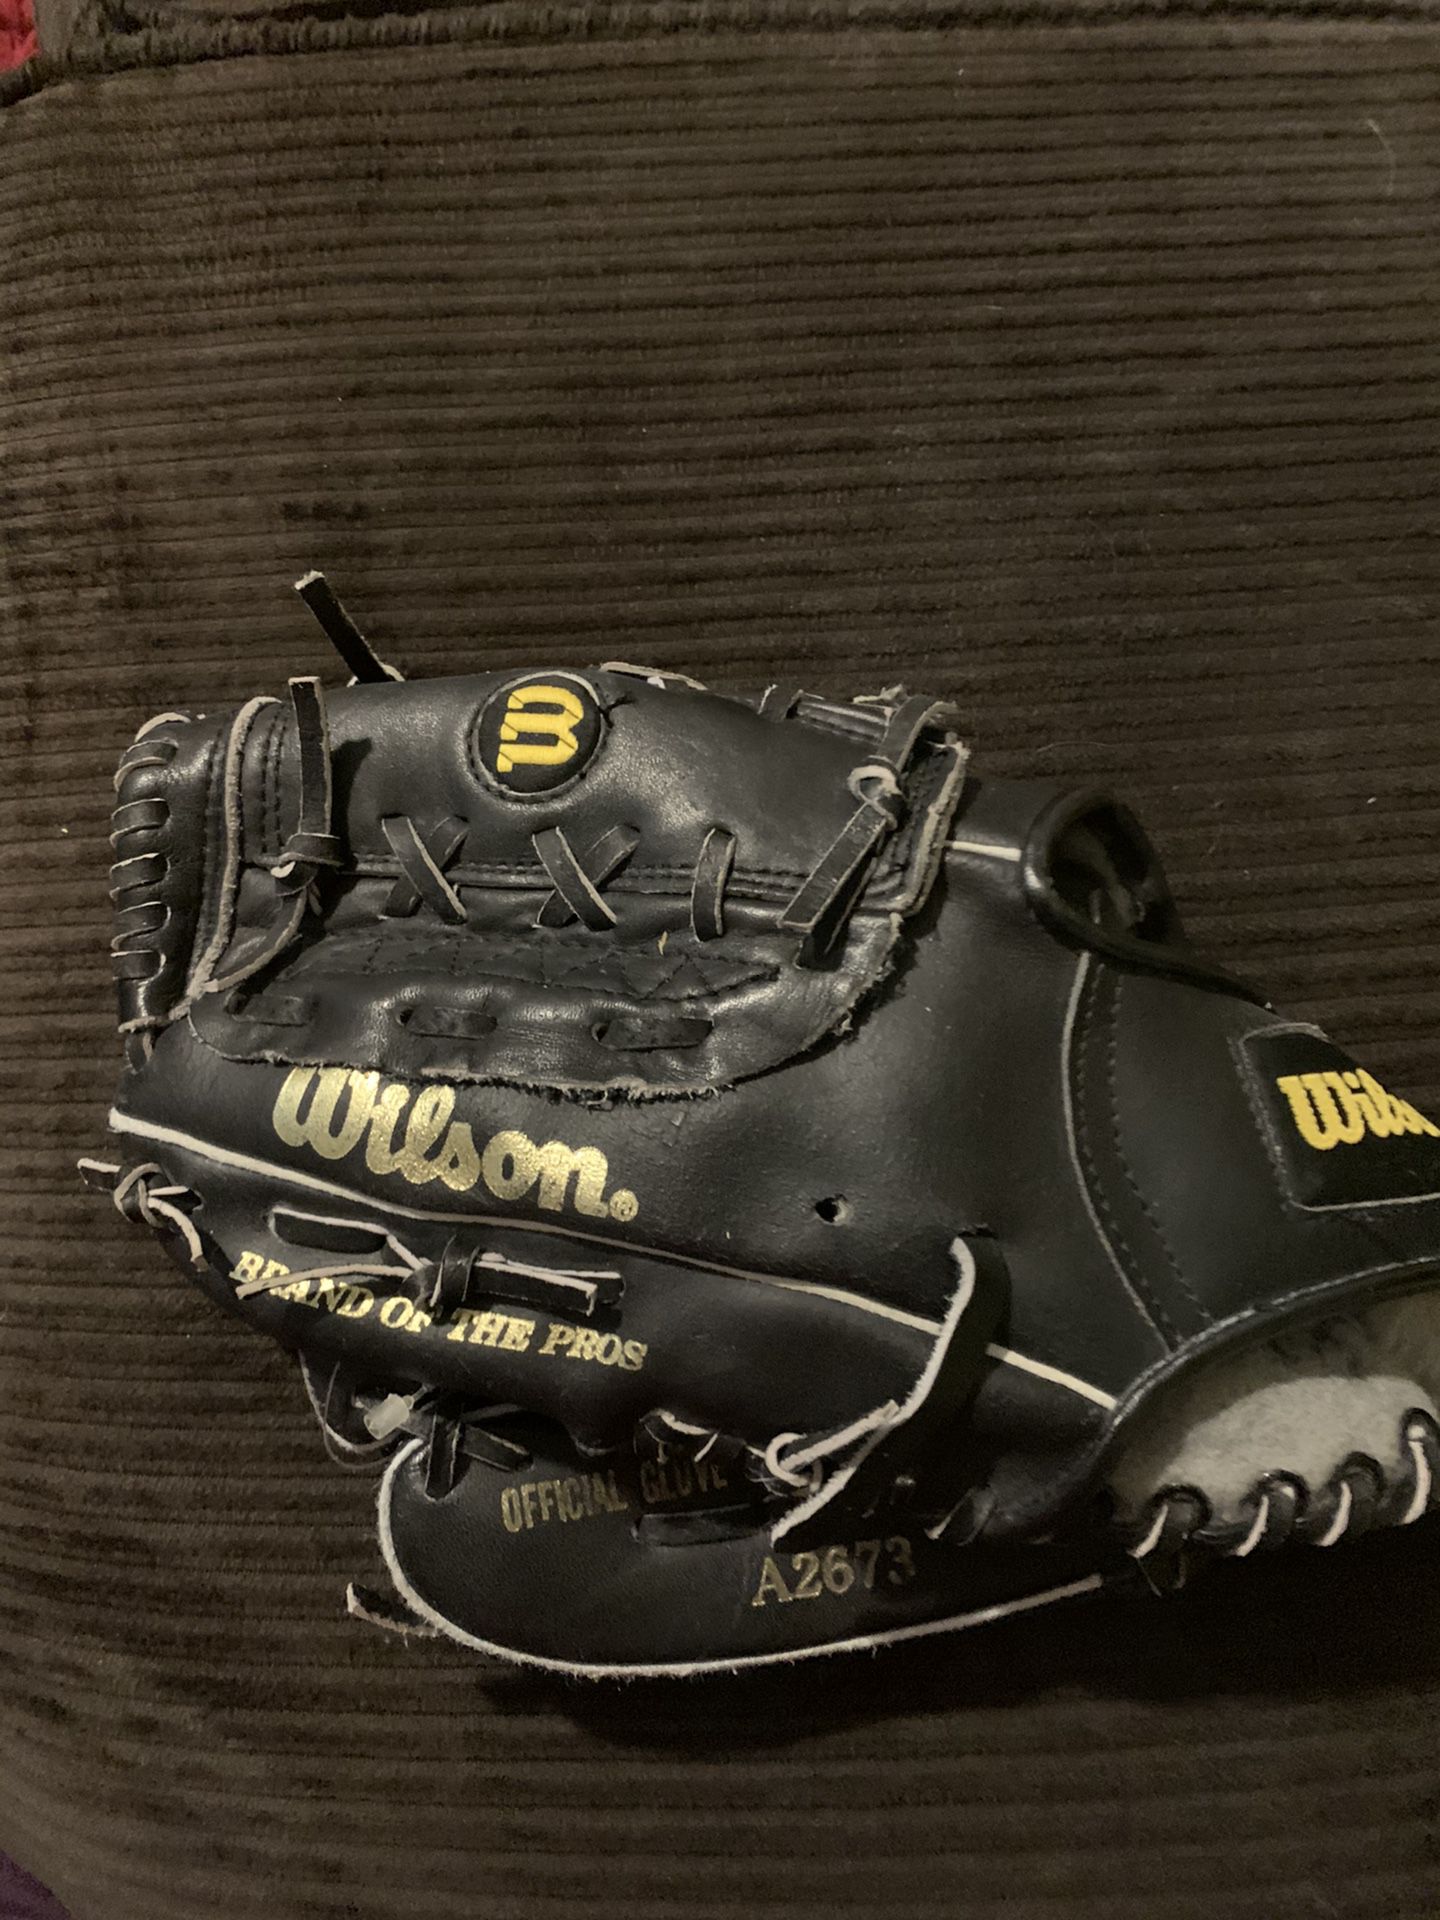 Wilson baseball glove A2673